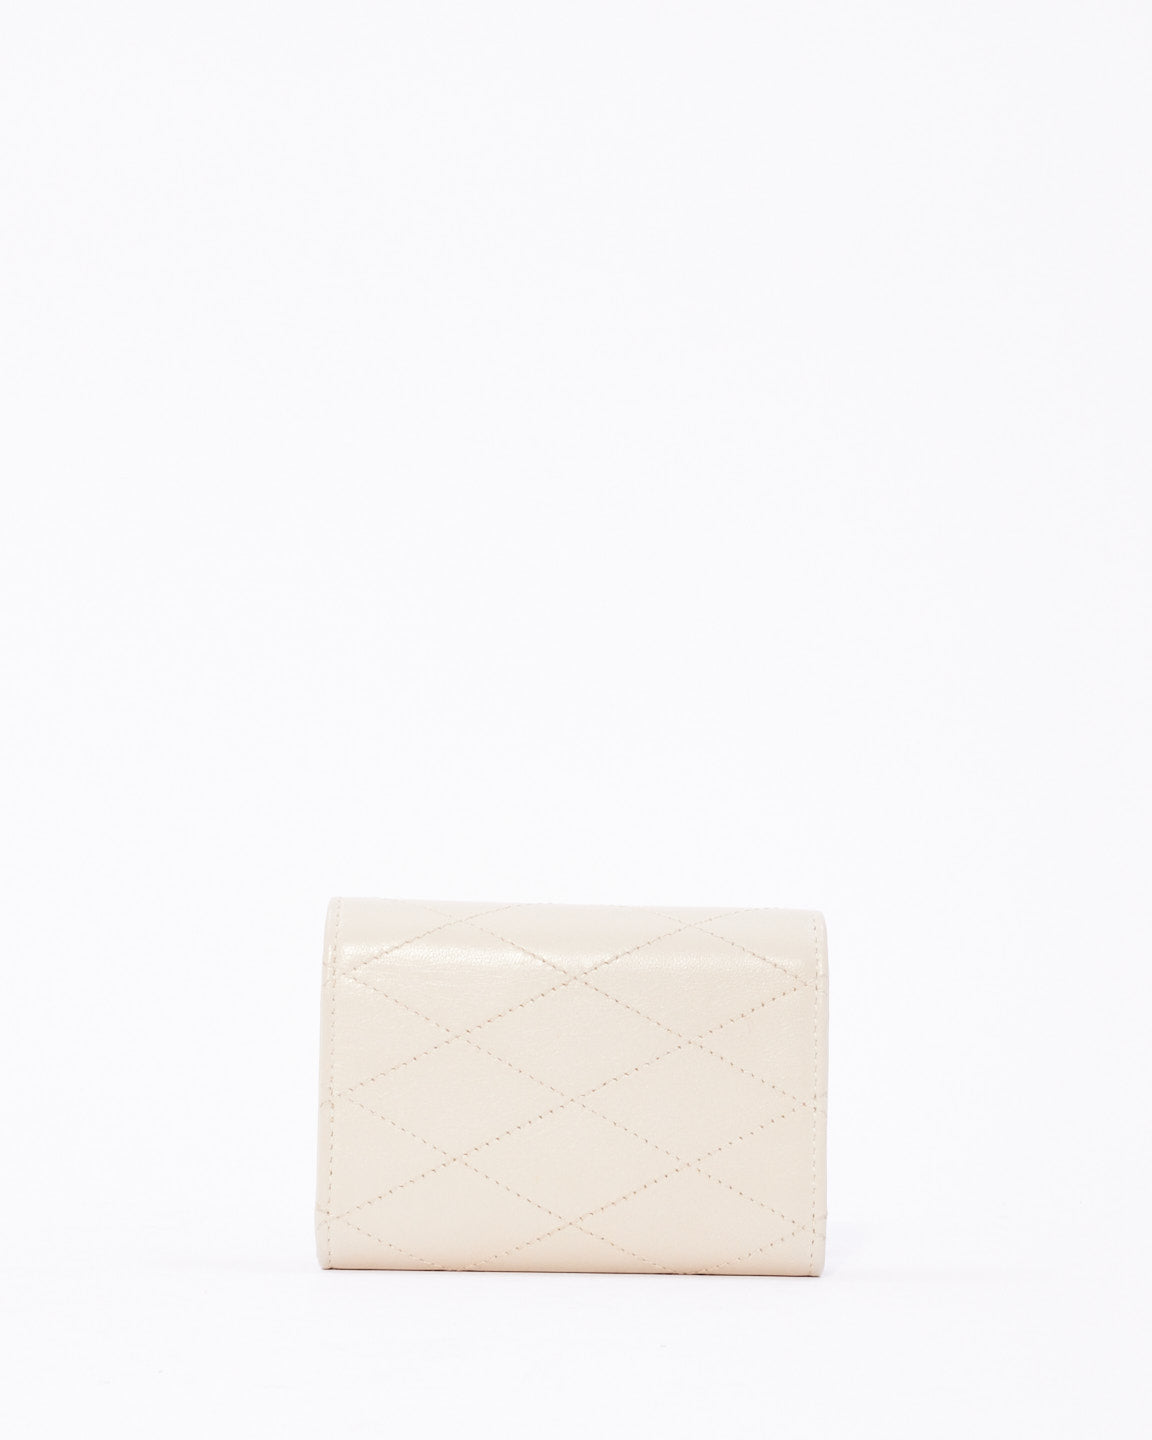 Saint Laurent Mini portefeuille en cuir matelassé blanc sur chaîne